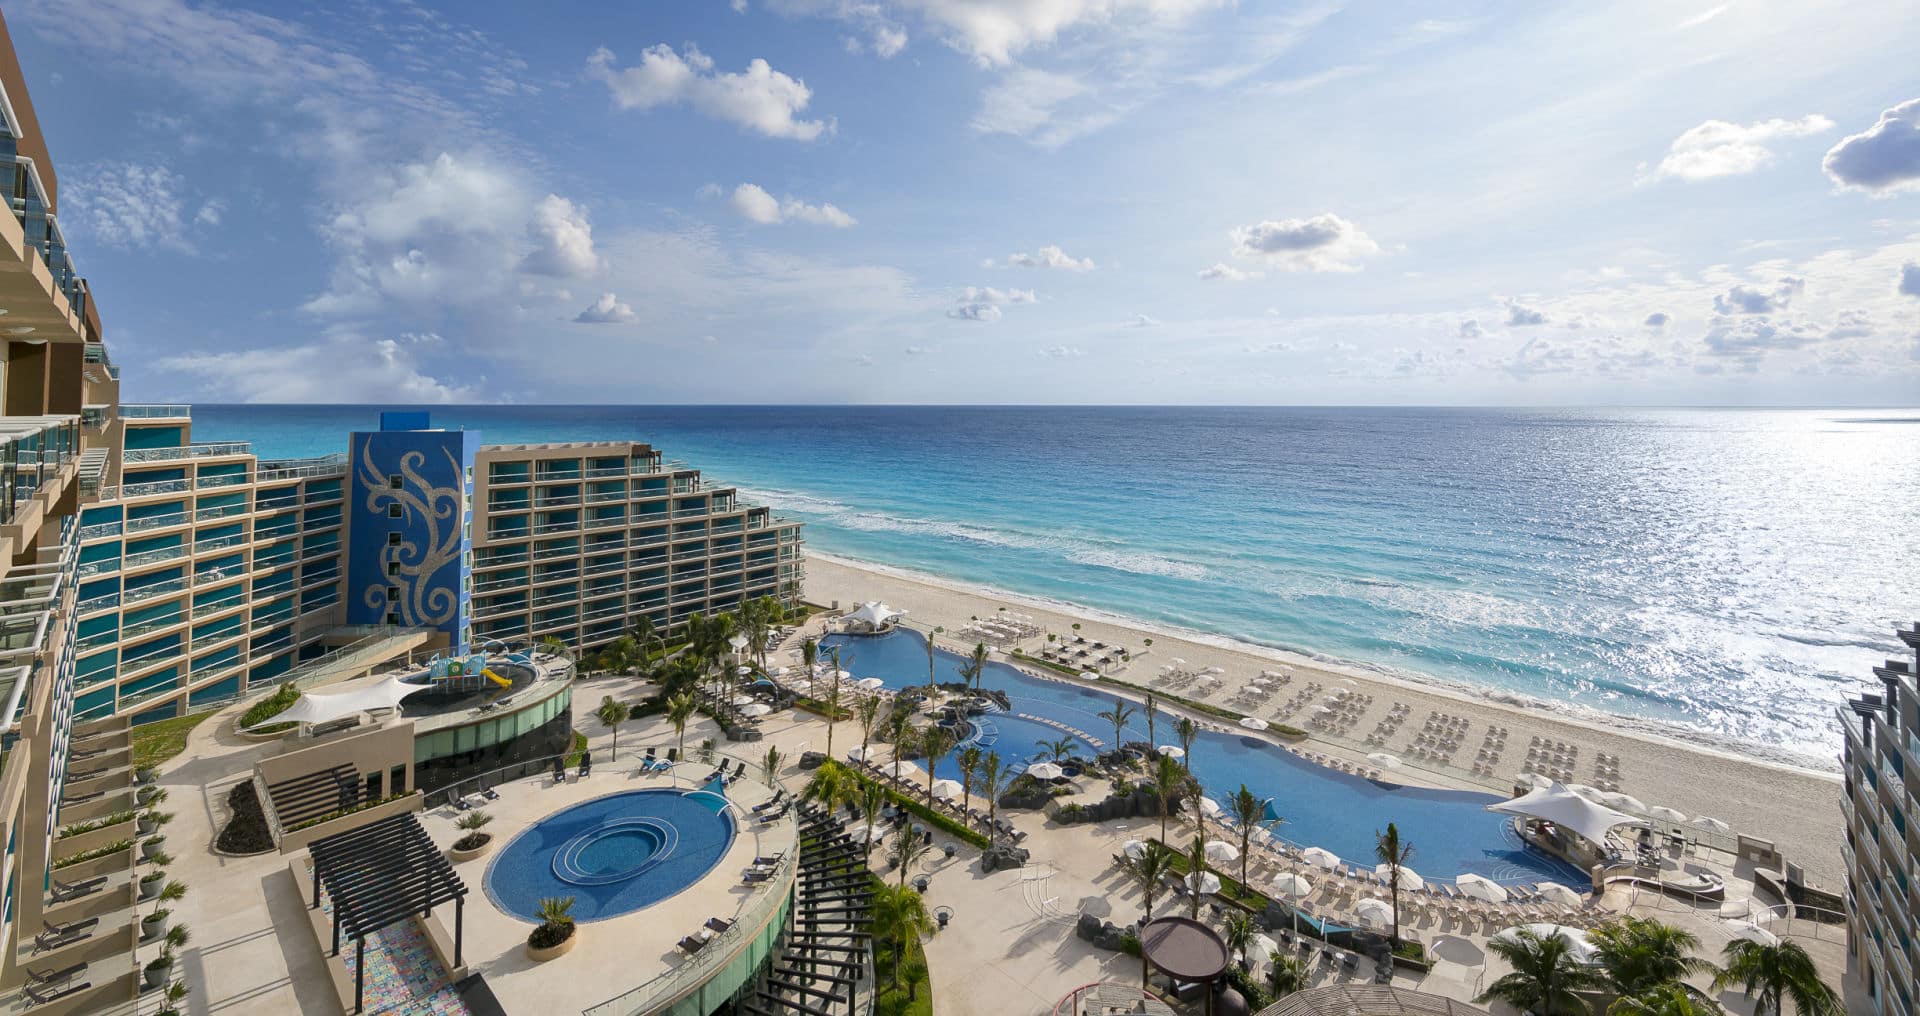 Hard Rock Cancun or Riviera Maya